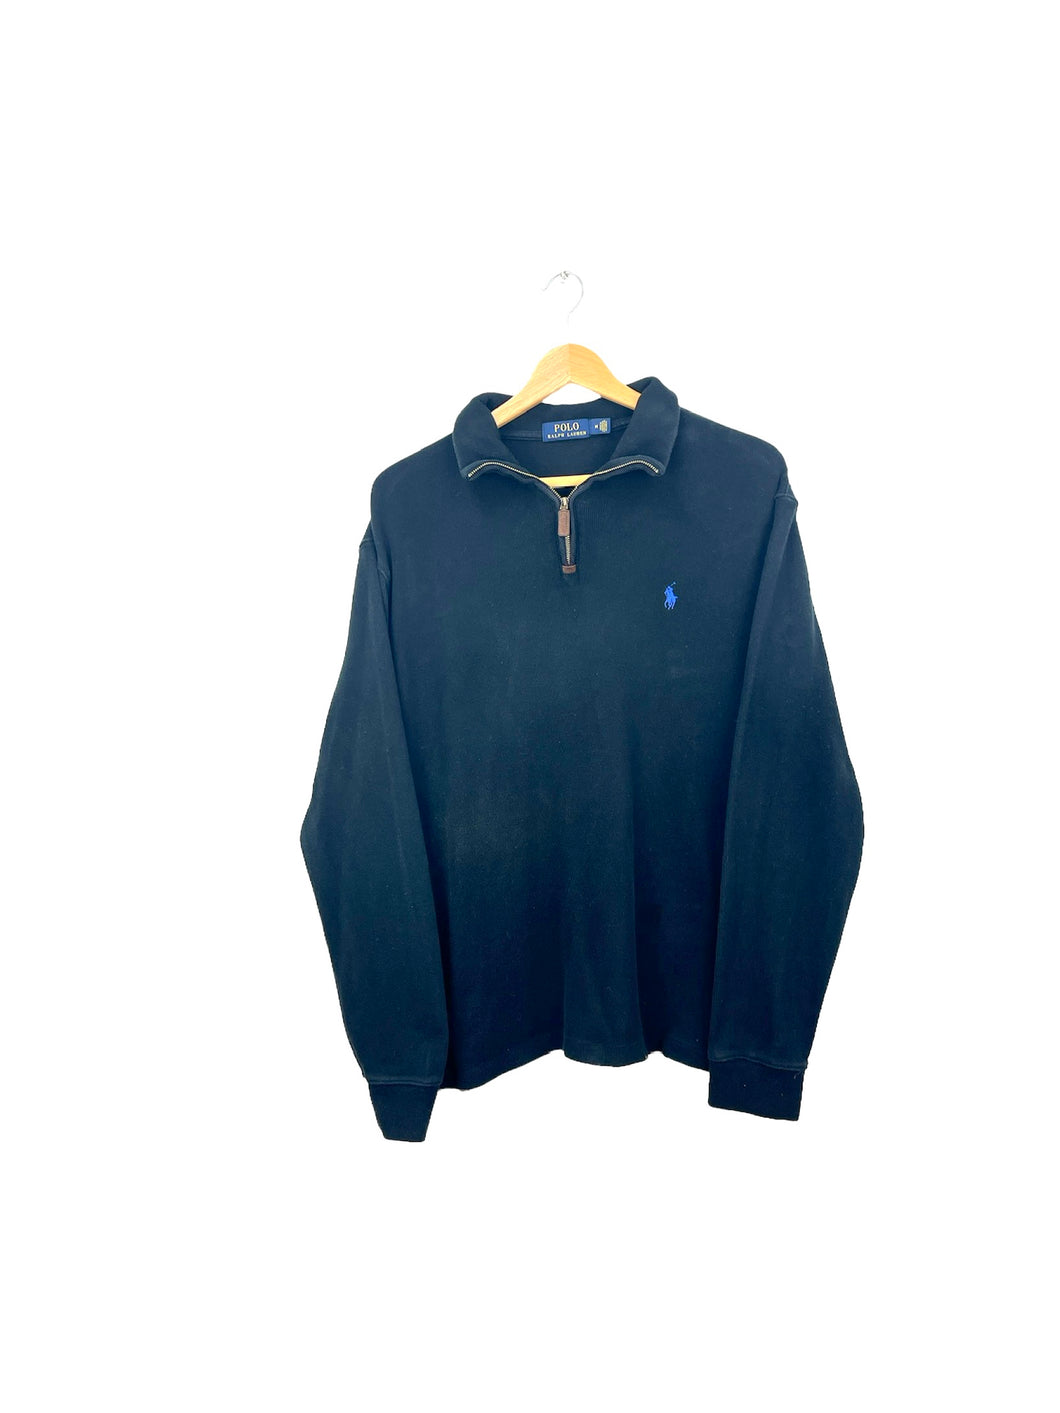 Ralph Lauren 1/4 Zip Sweatshirt - Medium